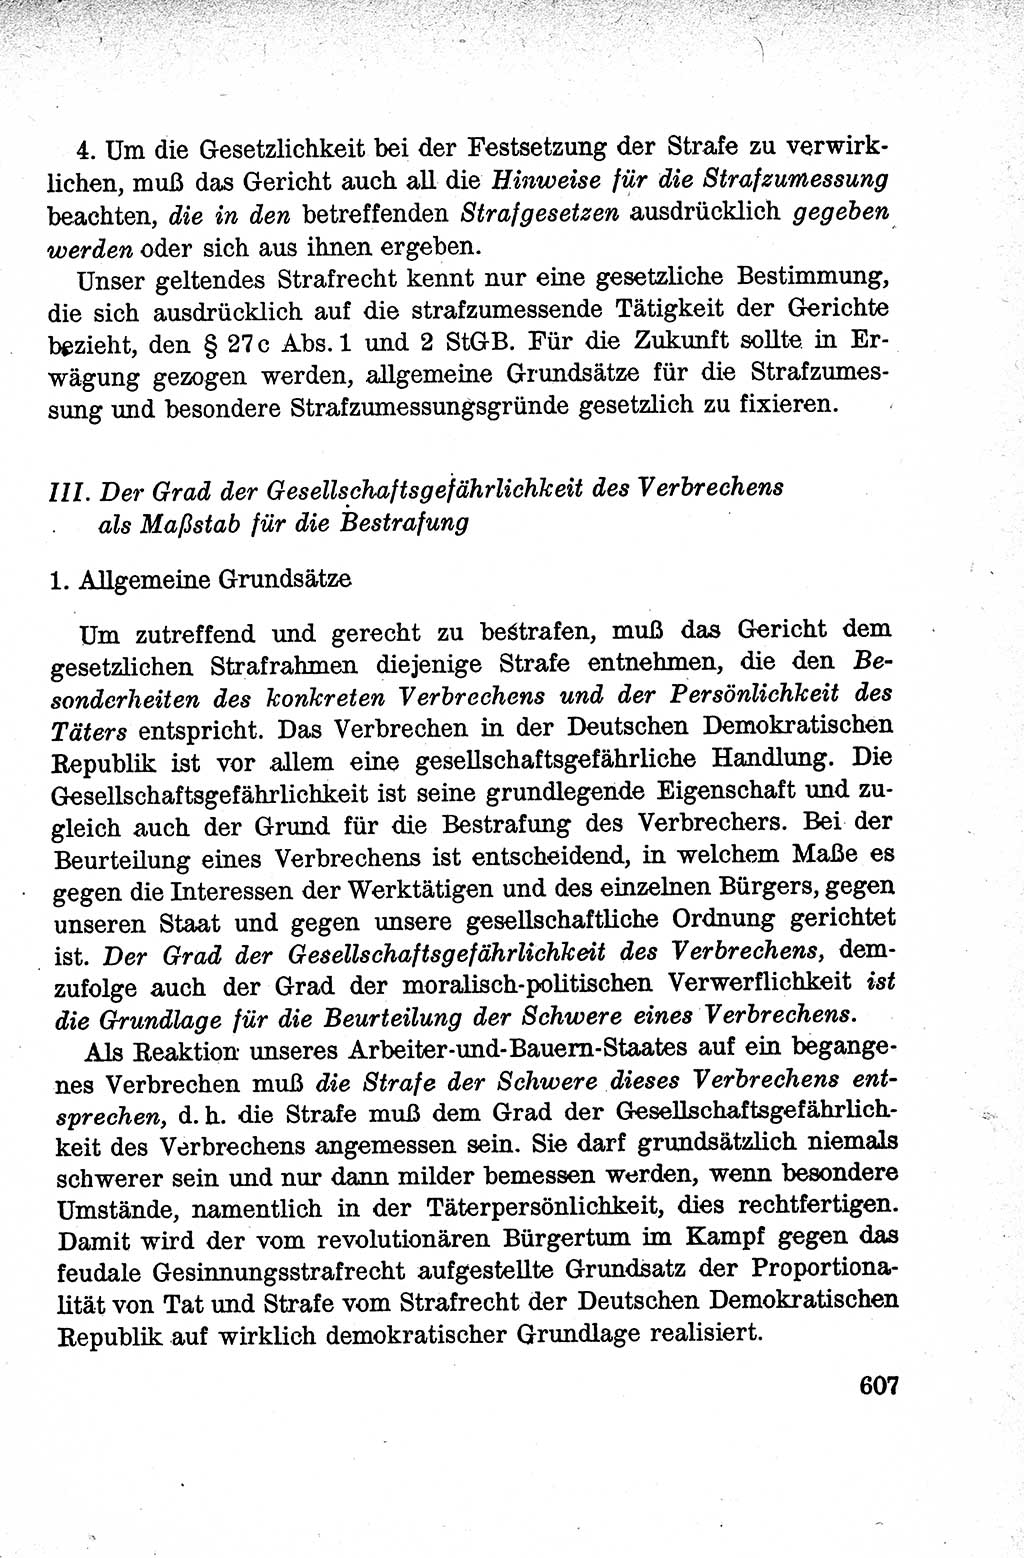 Lehrbuch des Strafrechts der Deutschen Demokratischen Republik (DDR), Allgemeiner Teil 1959, Seite 607 (Lb. Strafr. DDR AT 1959, S. 607)